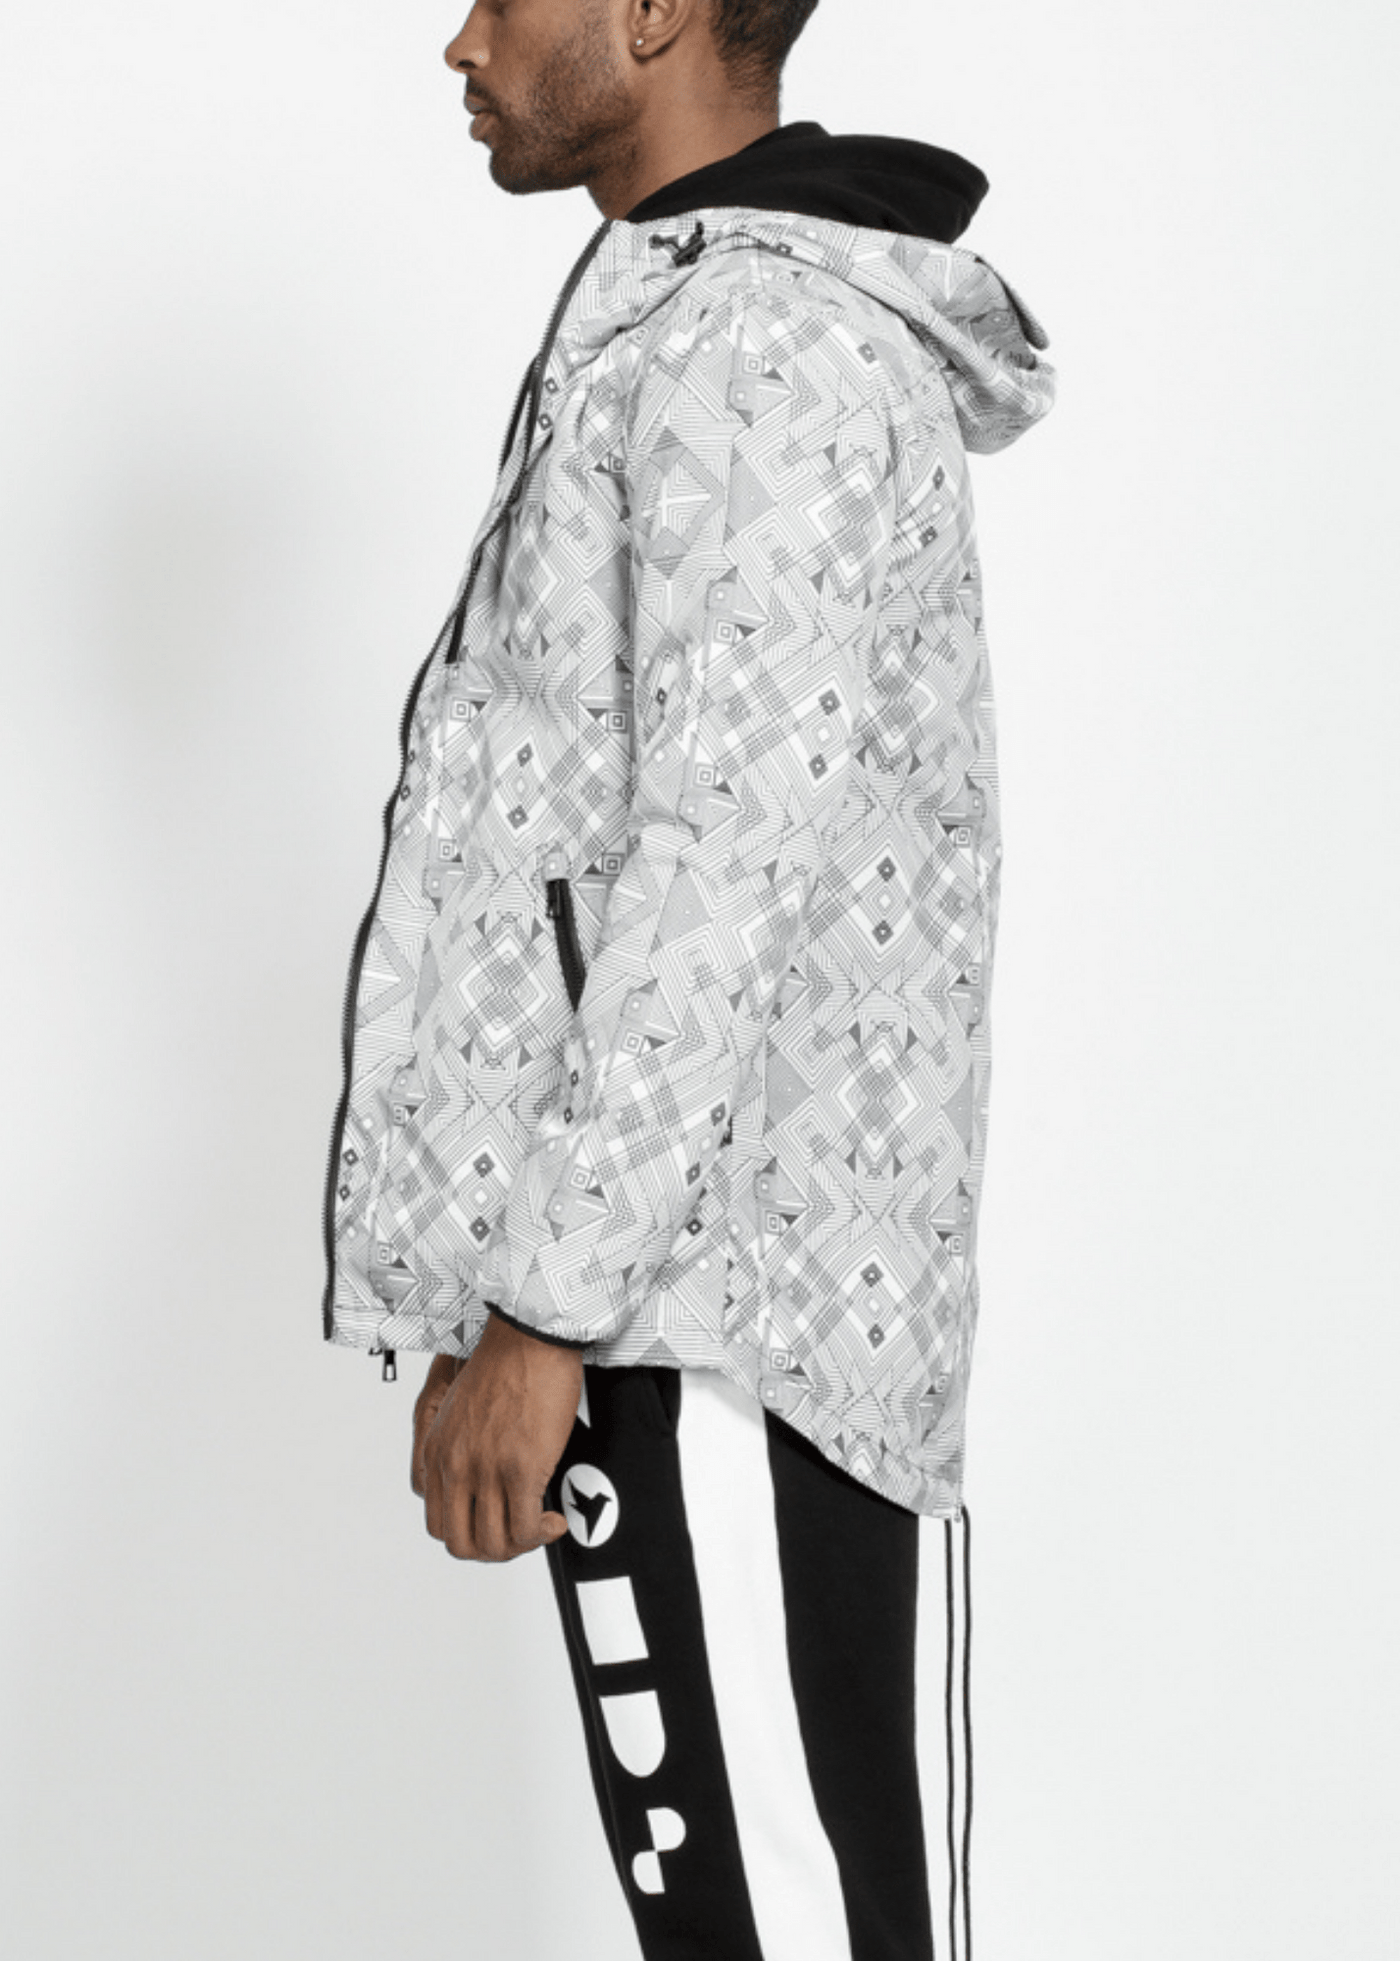 Men's Tech Graphic Wind Breaker Jacket in White by Shop at Konus